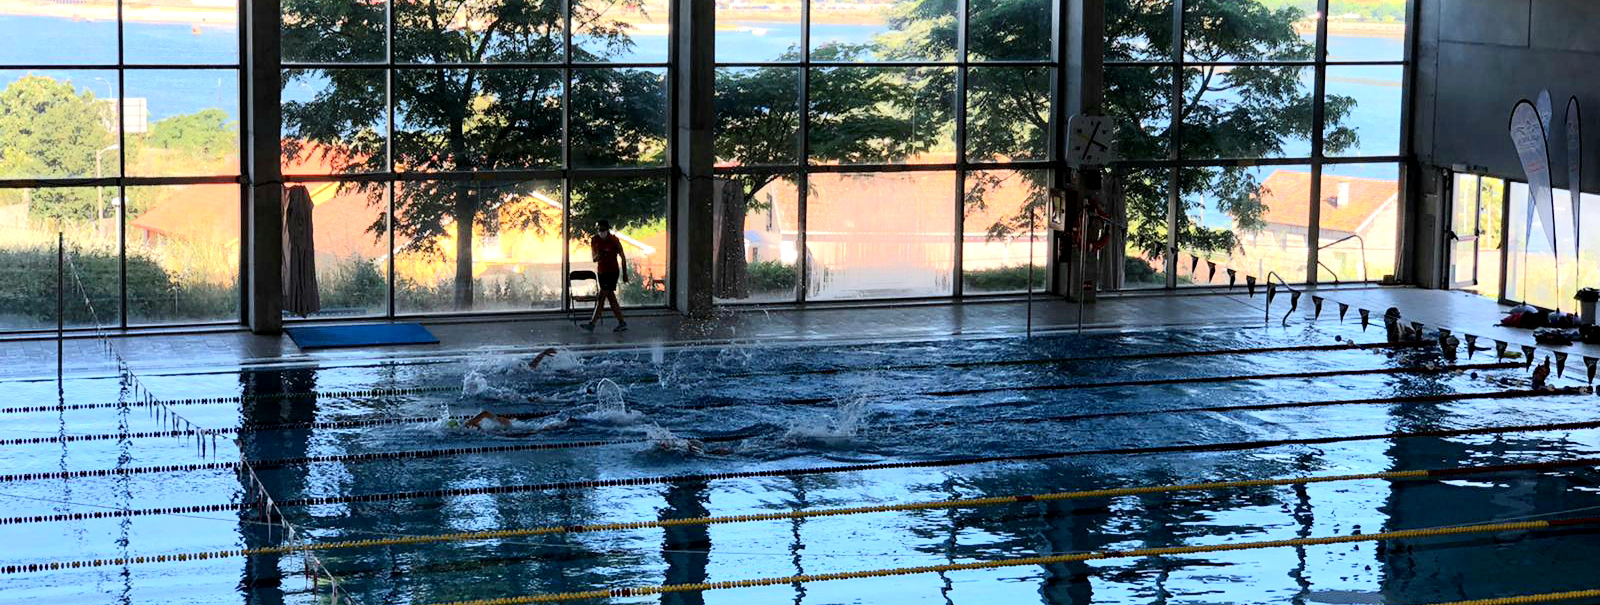 El Galaico ofrece jornadas gratuitas para probar la natación con el Club